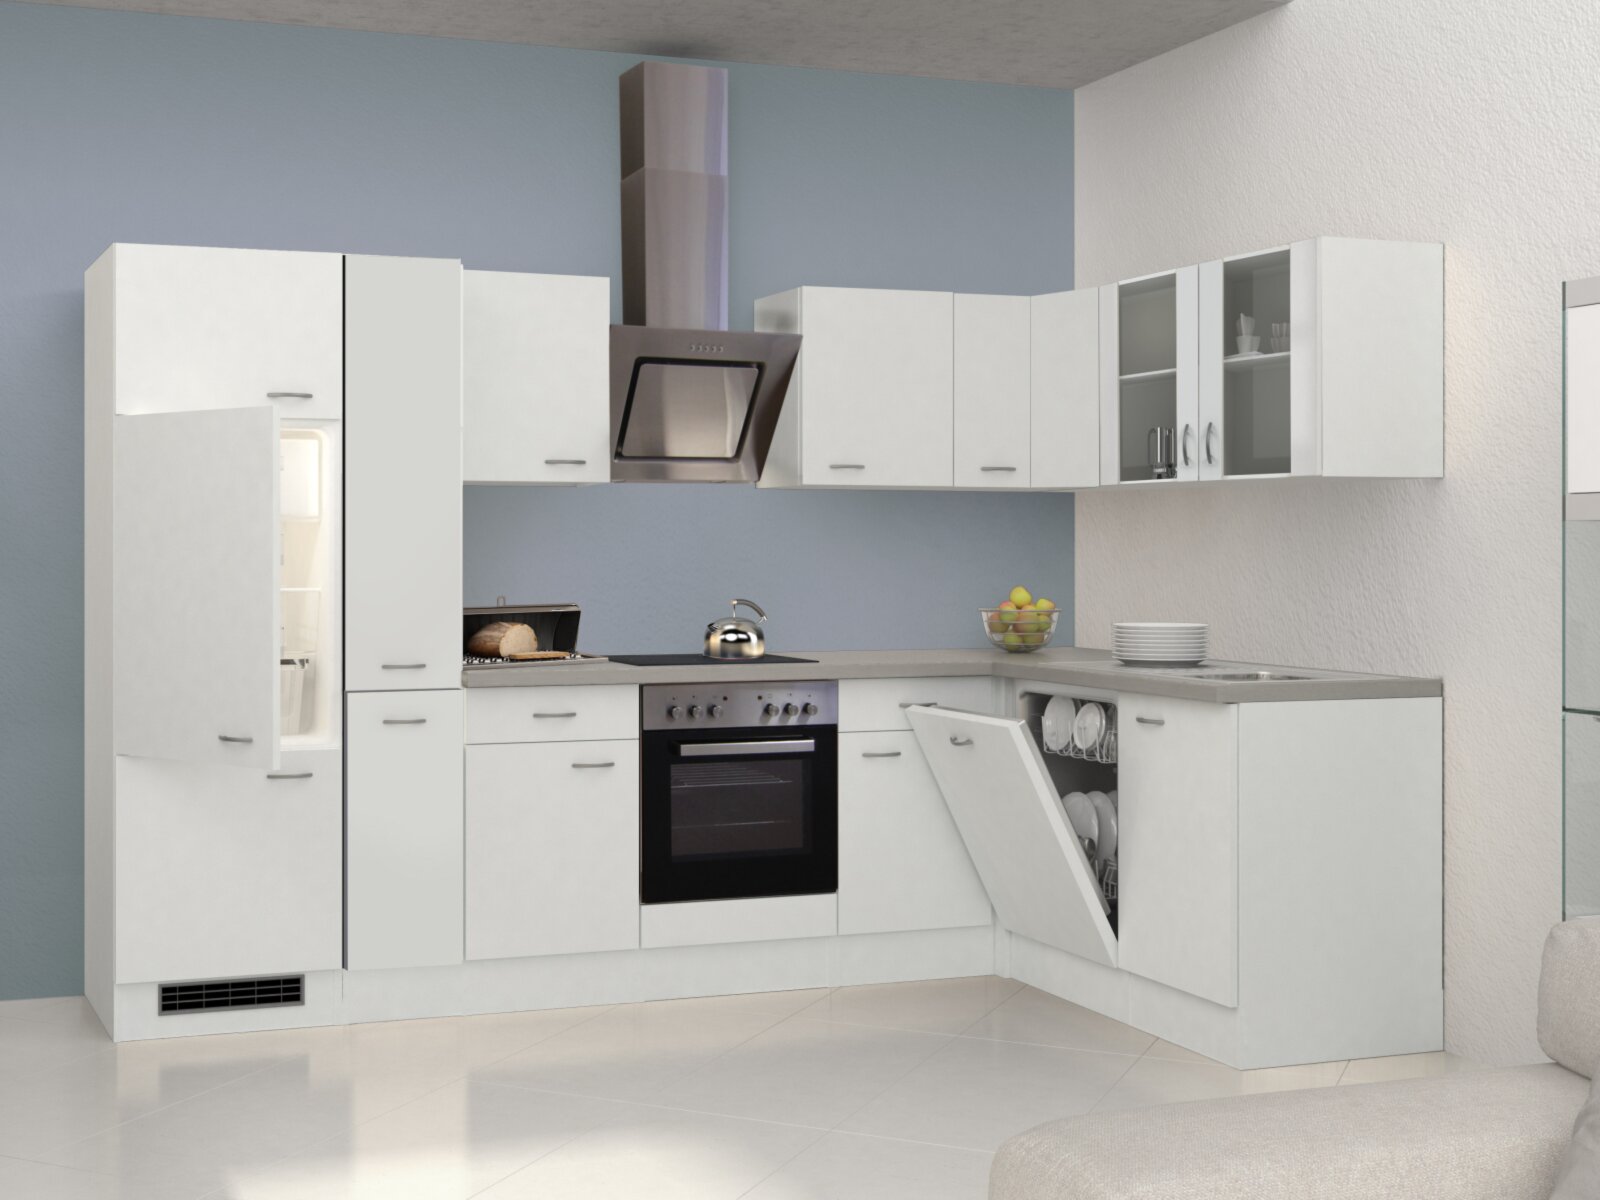 Winkelküche WITO - weiß-grau - mit E-Geräten - 310x170 cm | Online bei  ROLLER kaufen